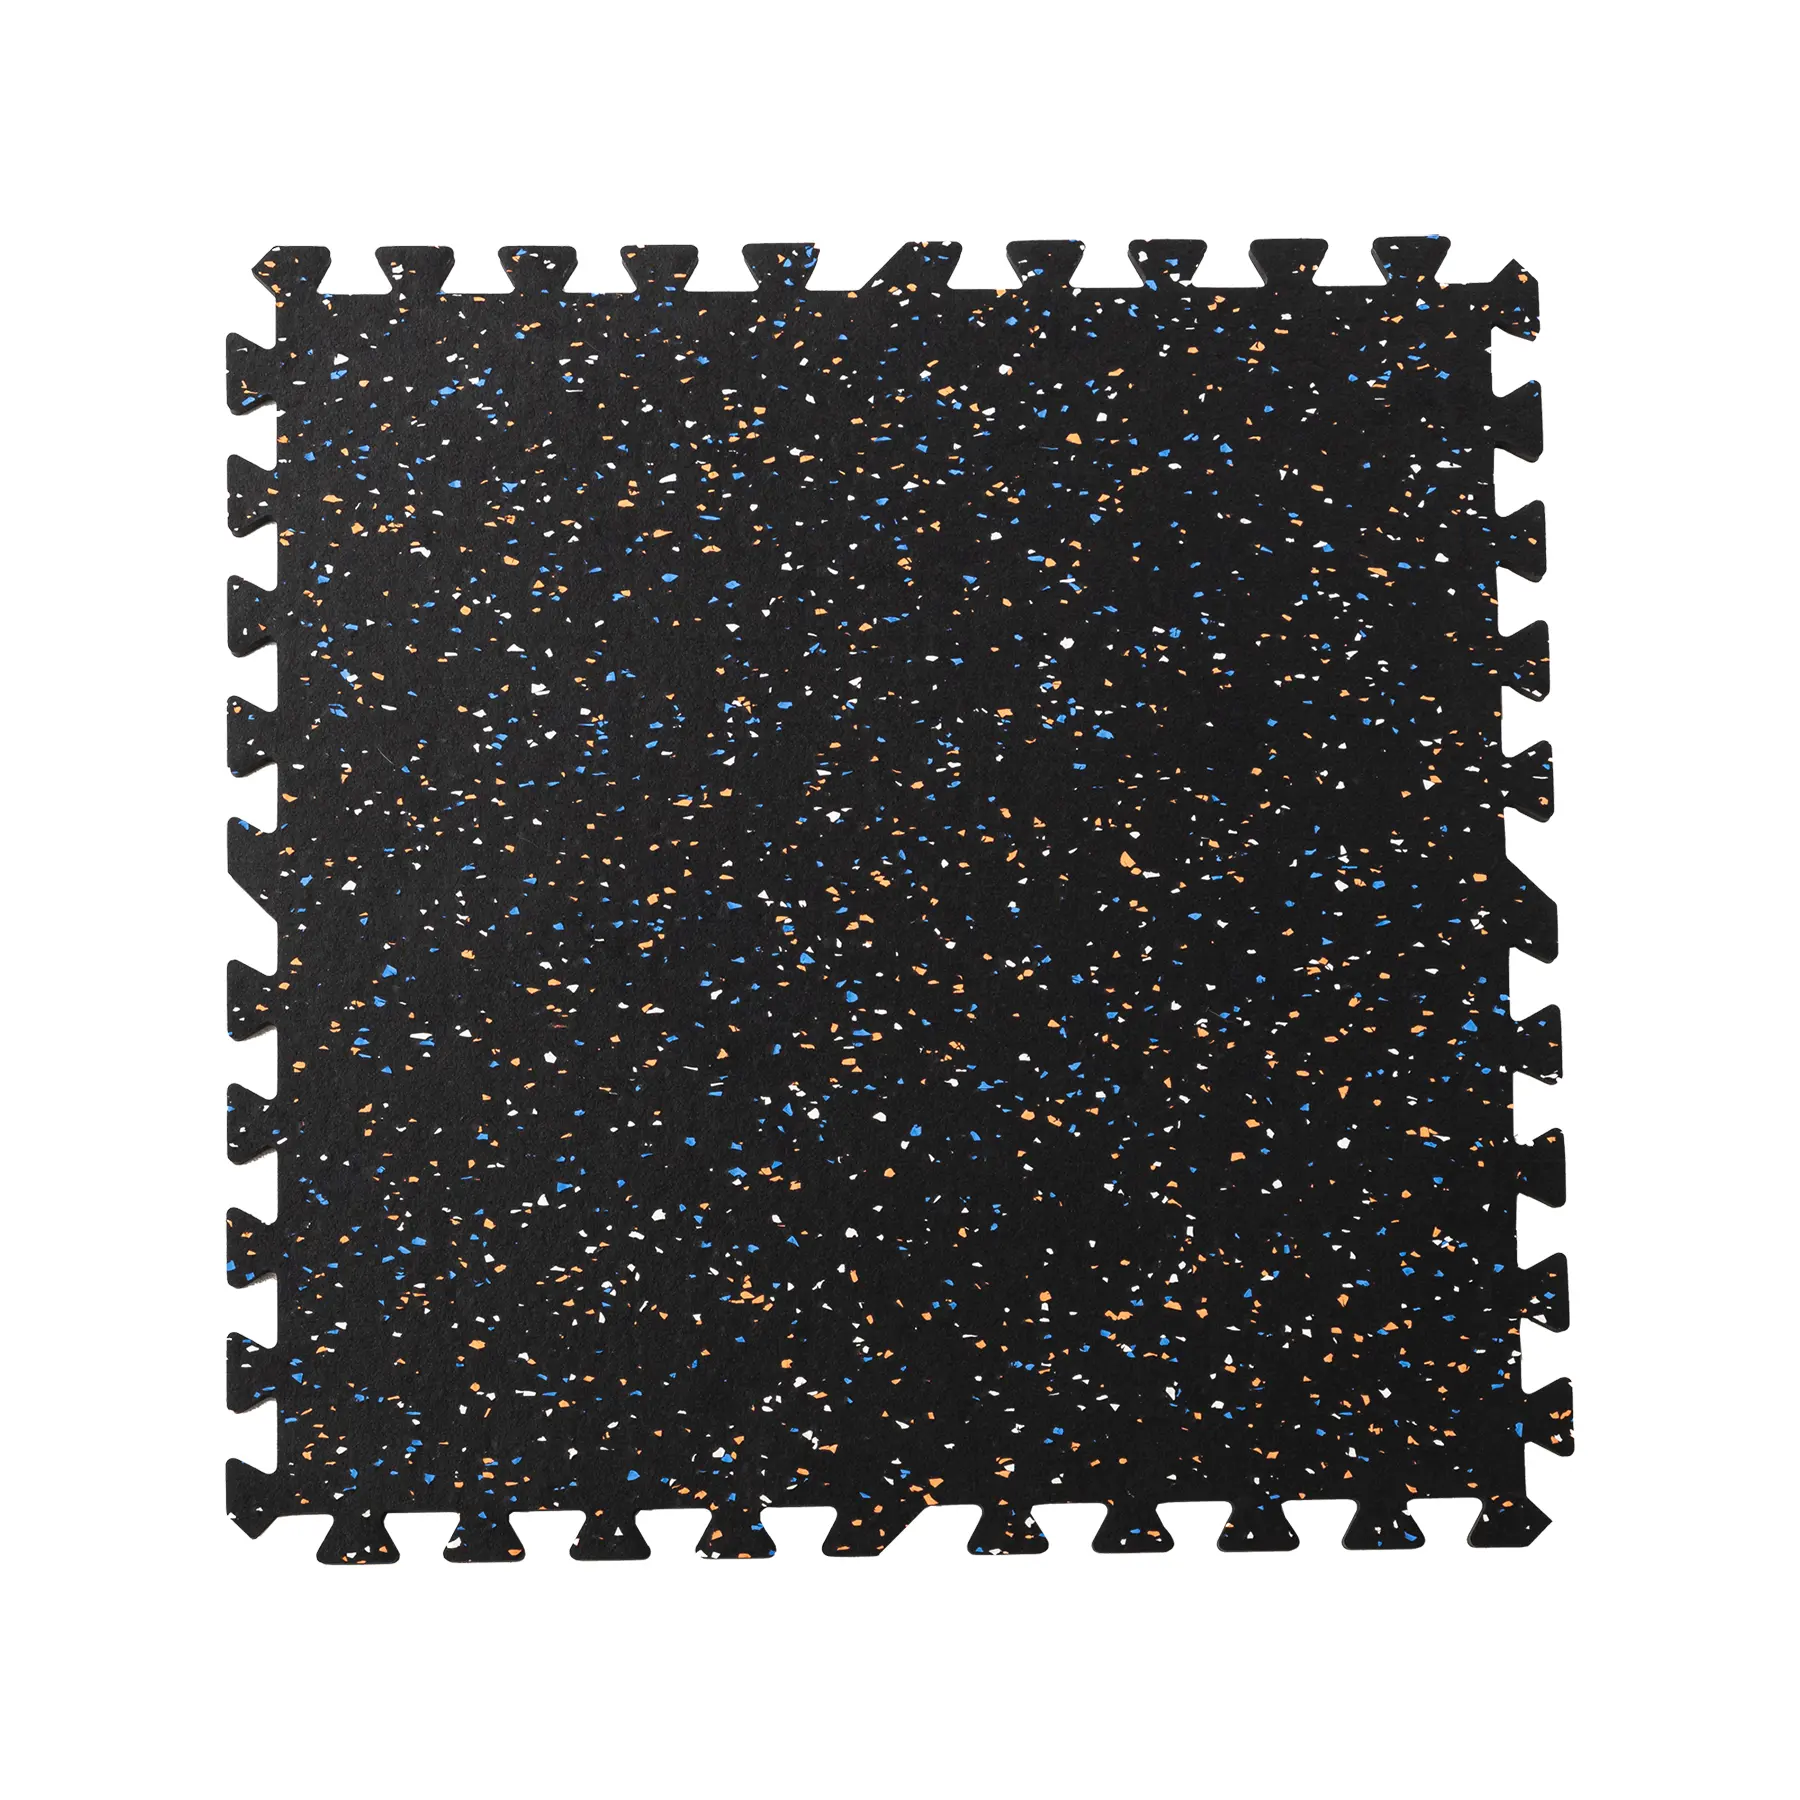 OEM prezzo di vendita di fabbrica blu-bianco modello maculato di colore gomma-eva tappetino puzzle da pavimento 100*100cm pesante tappetini da palestra 3 cm